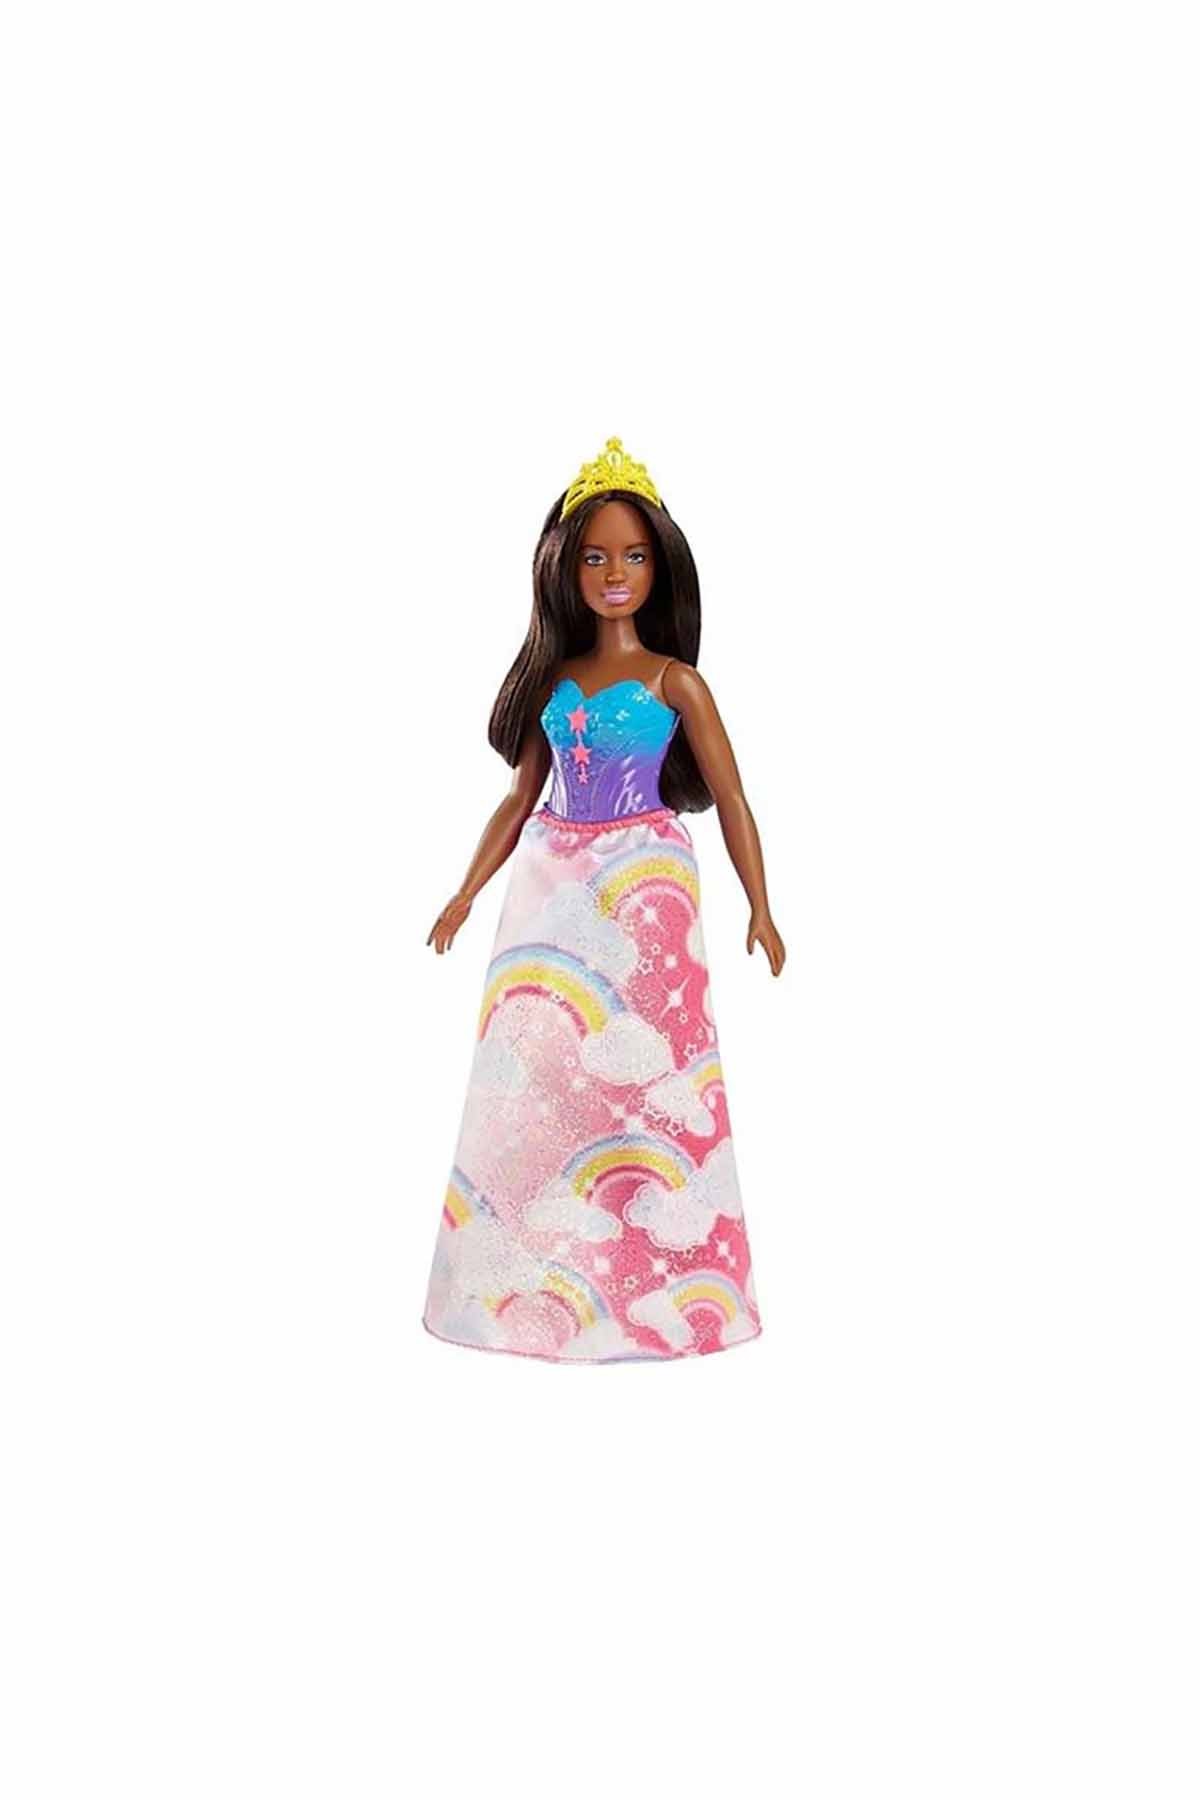 Barbie Dreamtopia Prenses Bebek FJC94